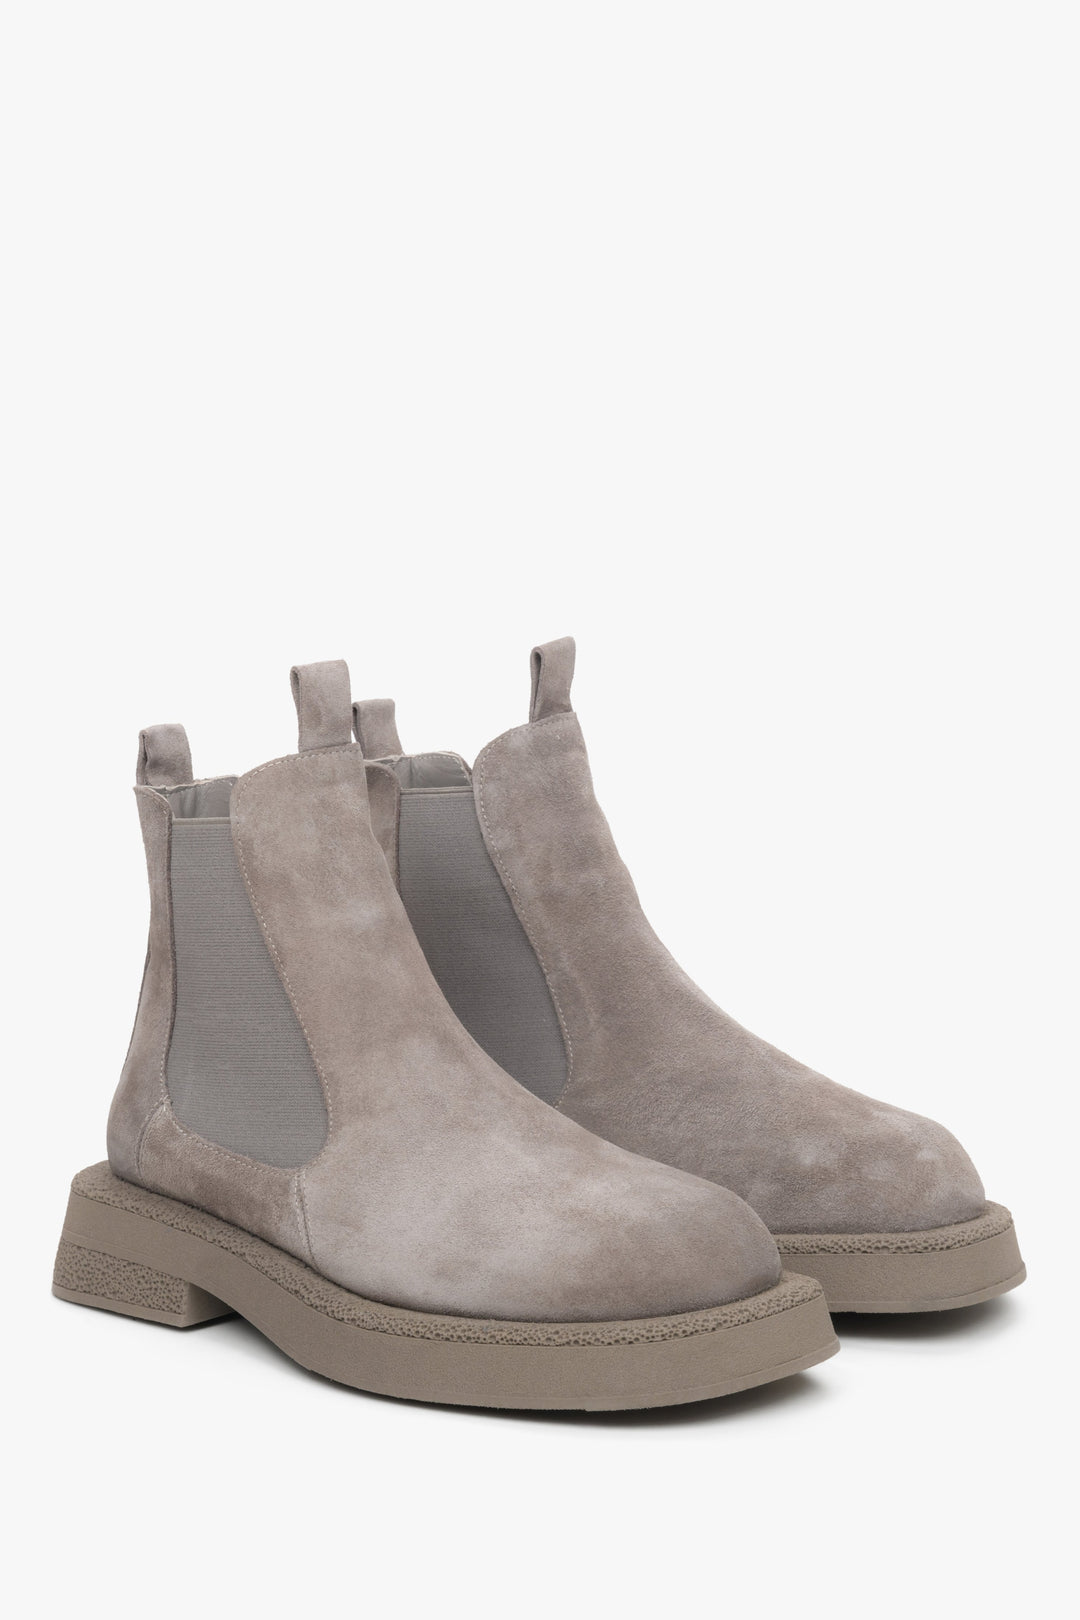 Women's grey chelsea boots.